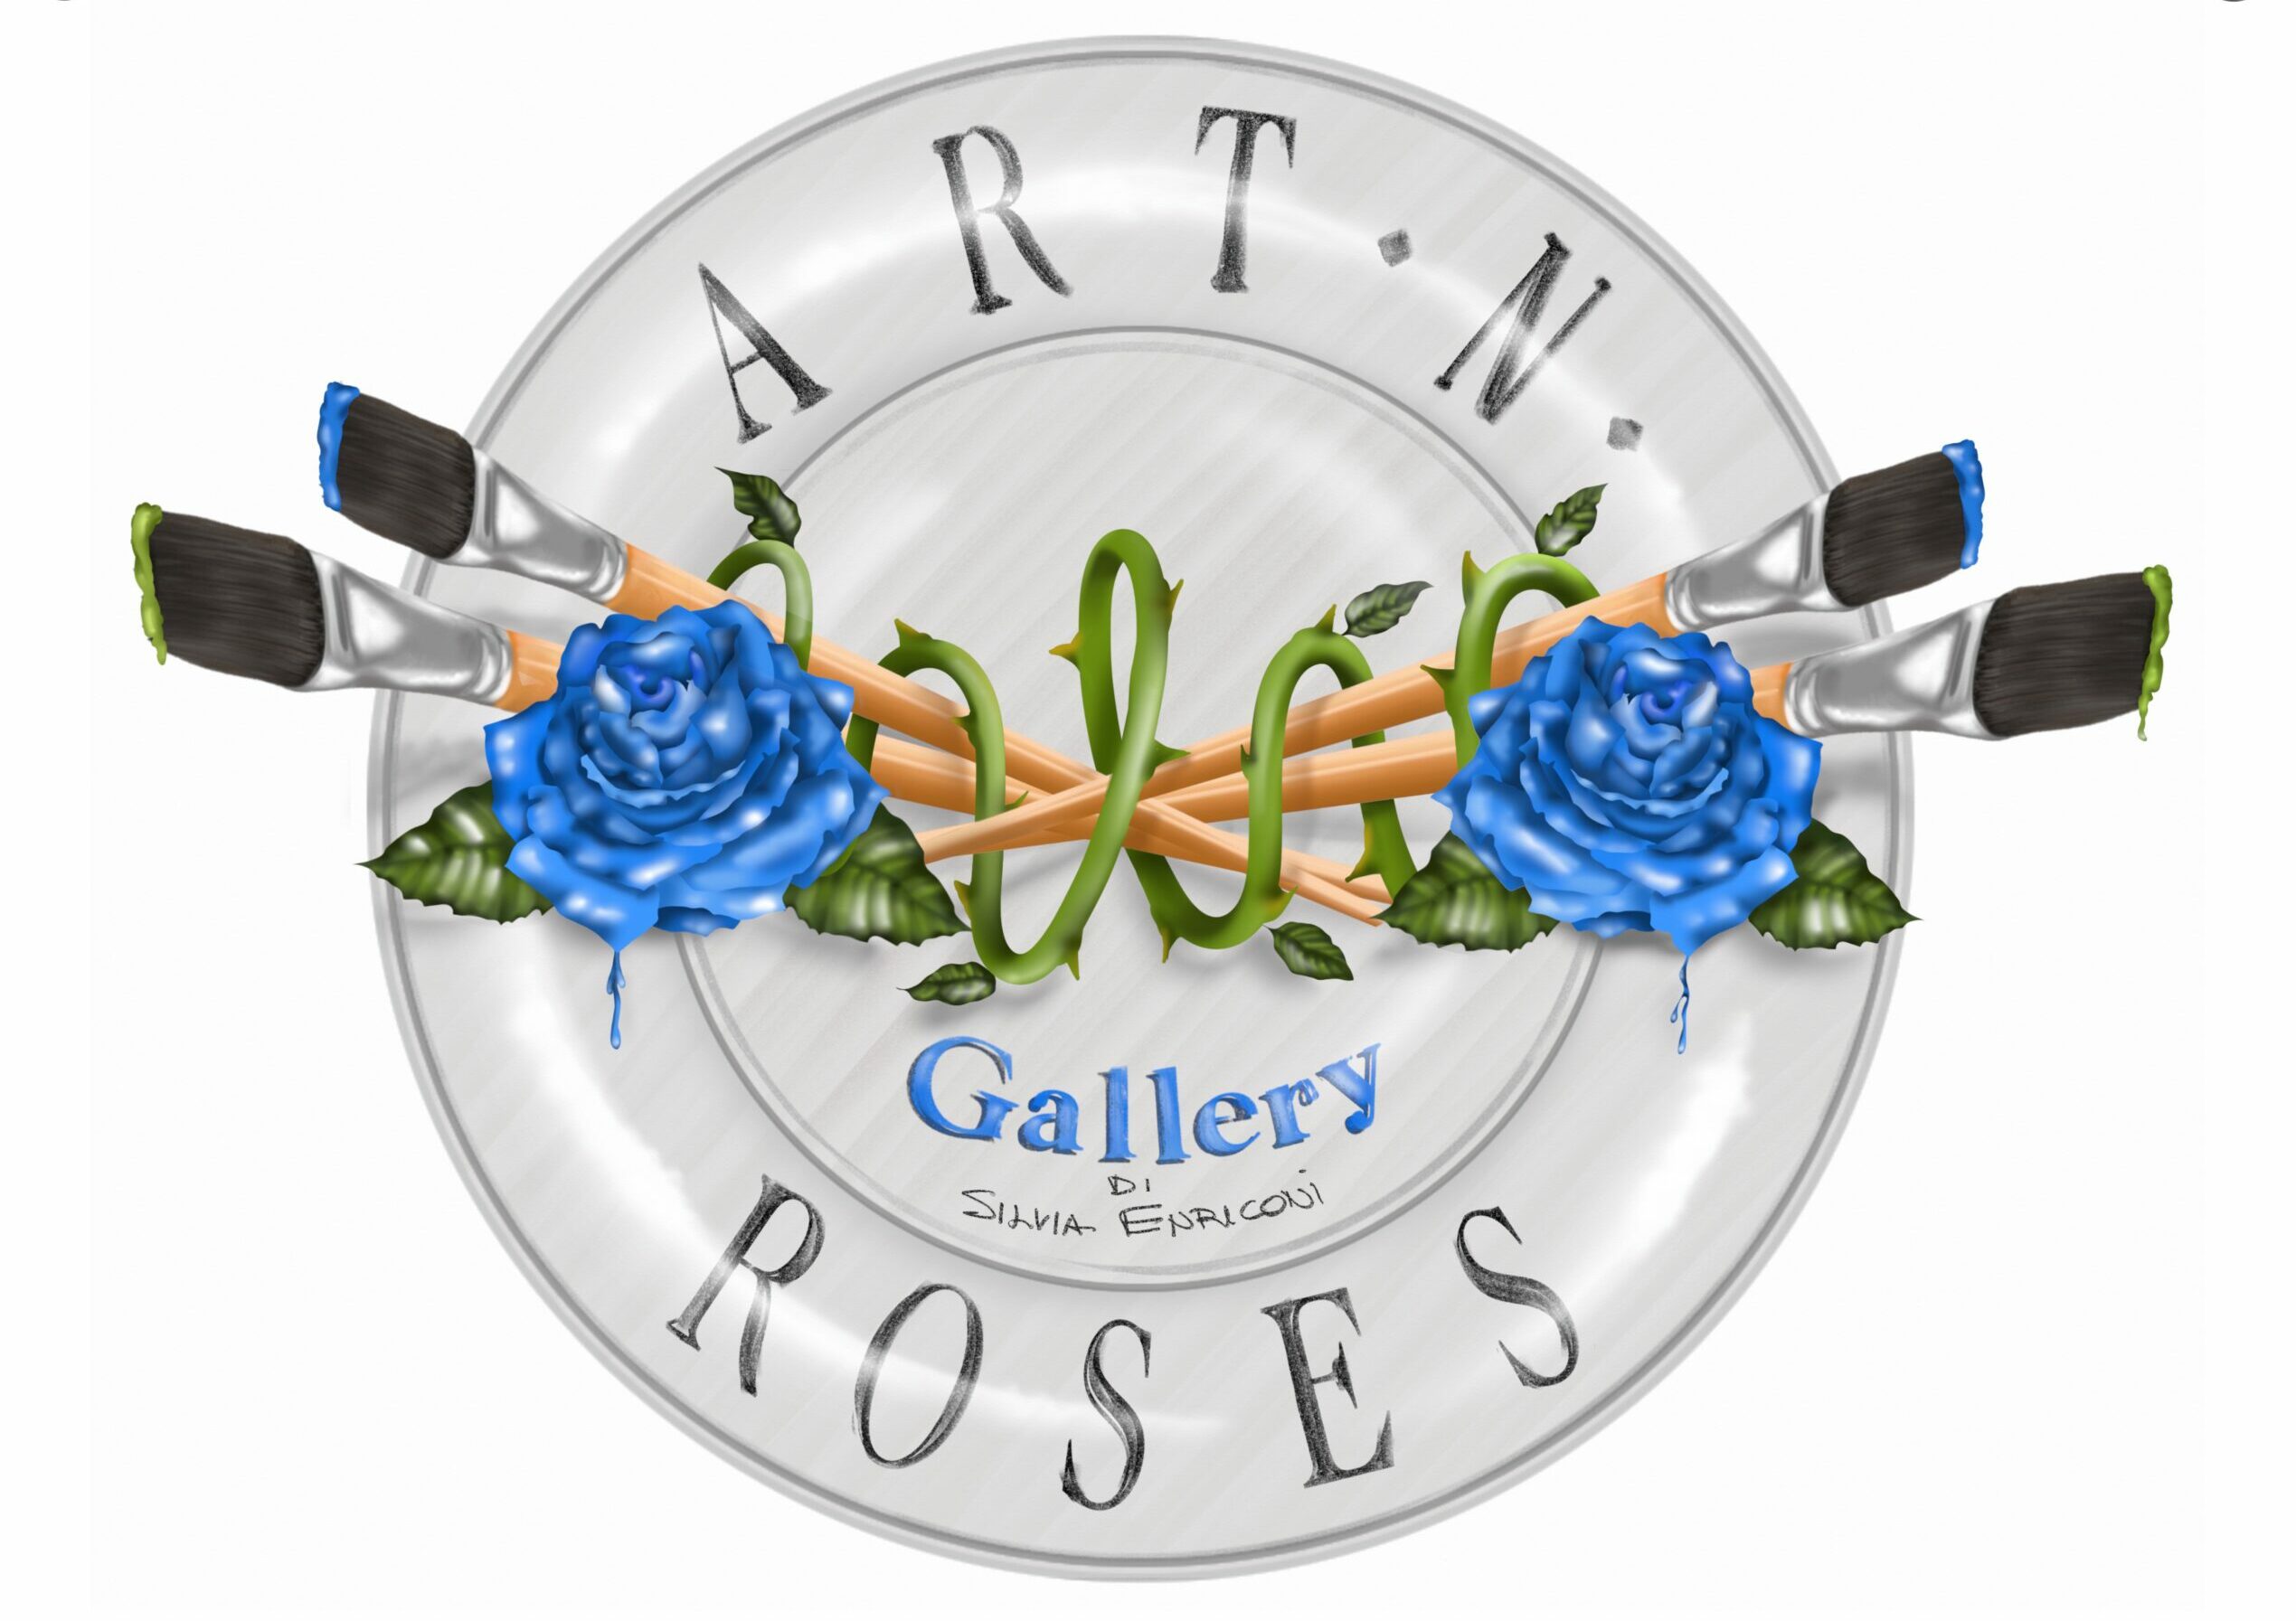 Art N' Roses Gallery